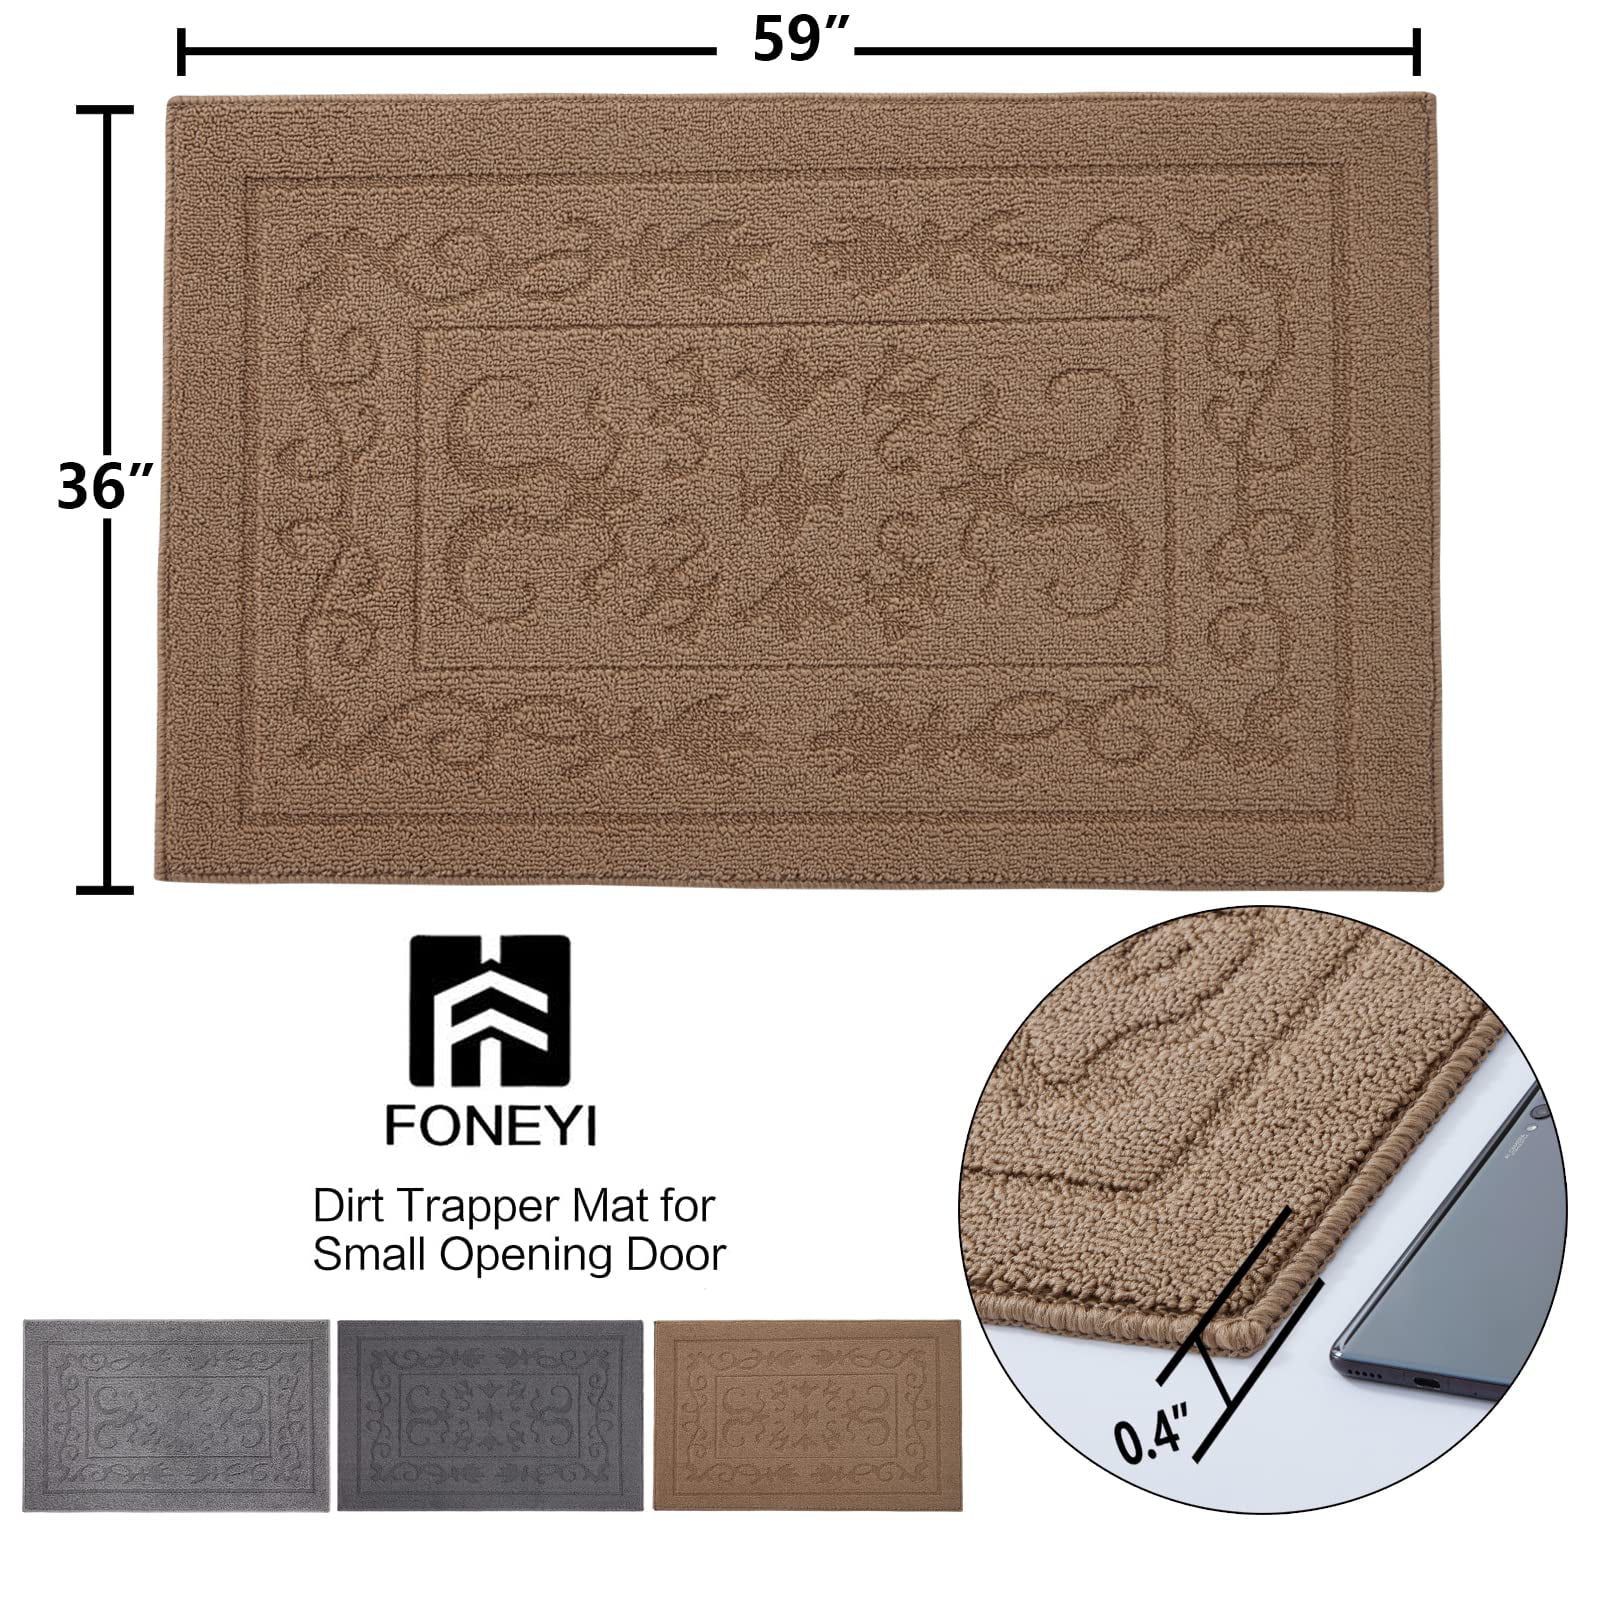 TIMO Entryway Rug, Door Mats Indoor 24x36 Rubber Backing Non Slip  Absorbent Indoor Doormat, Machine Washable Resist Dirt Low Profile Door  Mat, Front